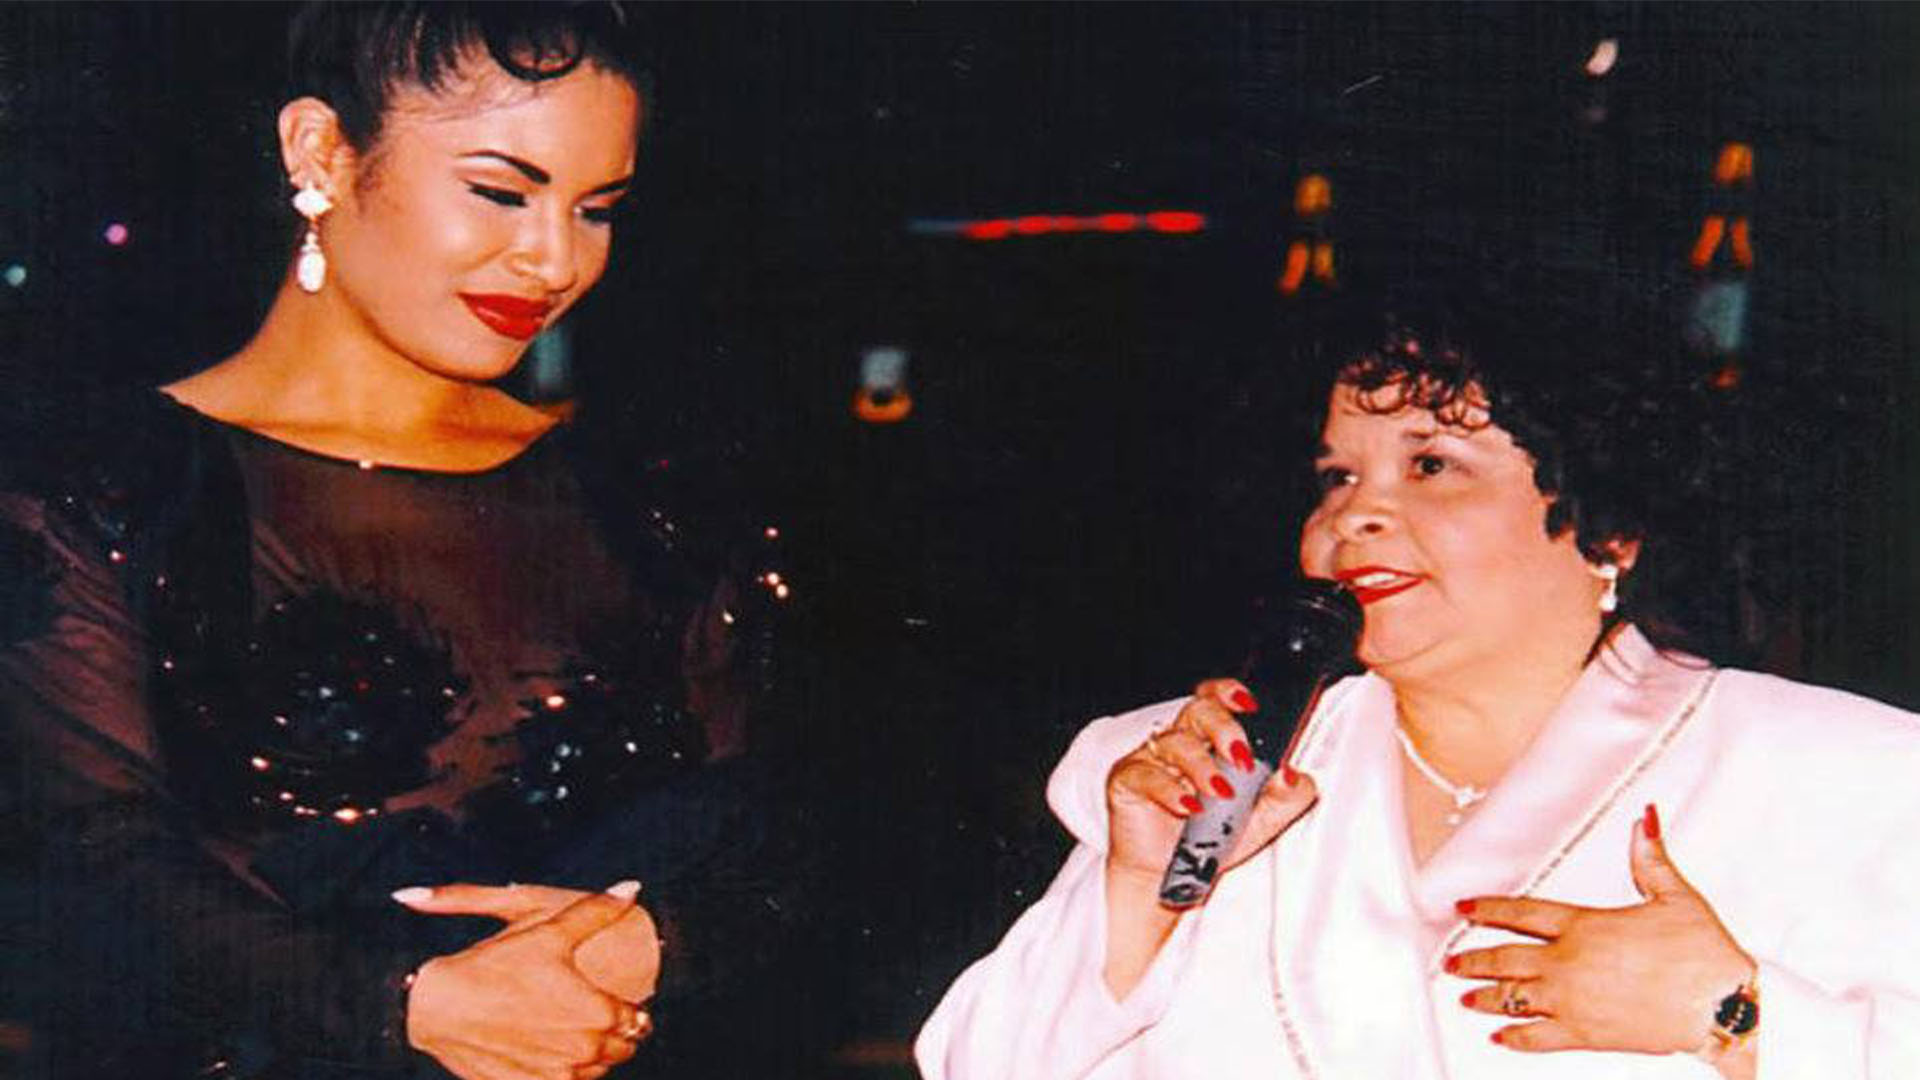 Selena y Yolanda Saldívar se conocieron gracias a la insistencia de la ex enfermera por fundar un club de fans para apoyar a la estrella (Foto: Twitter&#64;raulbrindis)